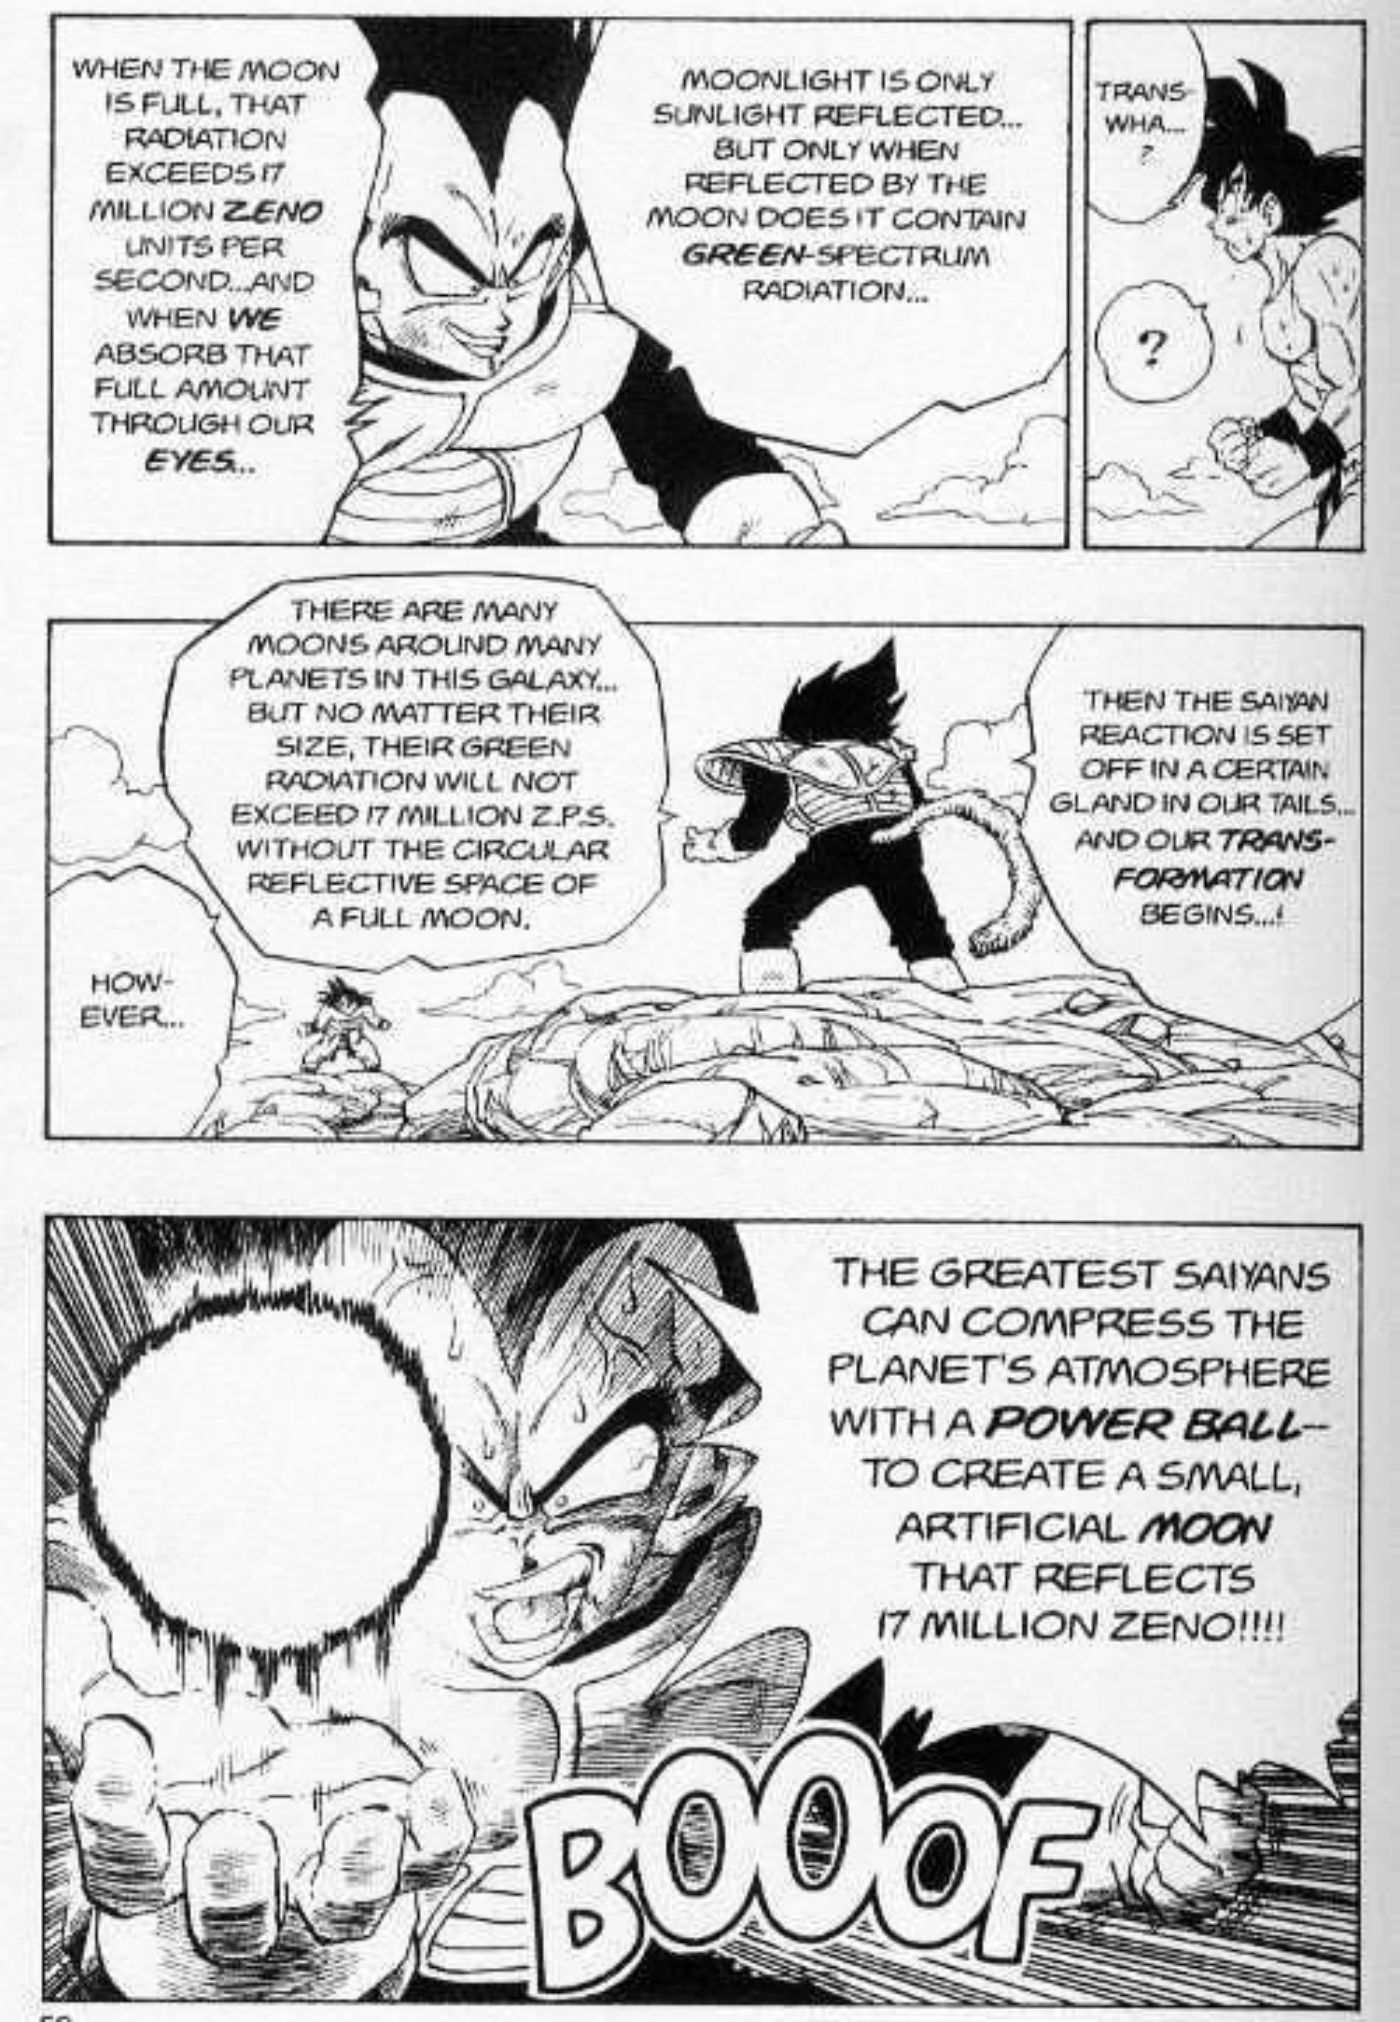 Vegeta Mastered One Powerful Saiyan Transformation Long Before Goku